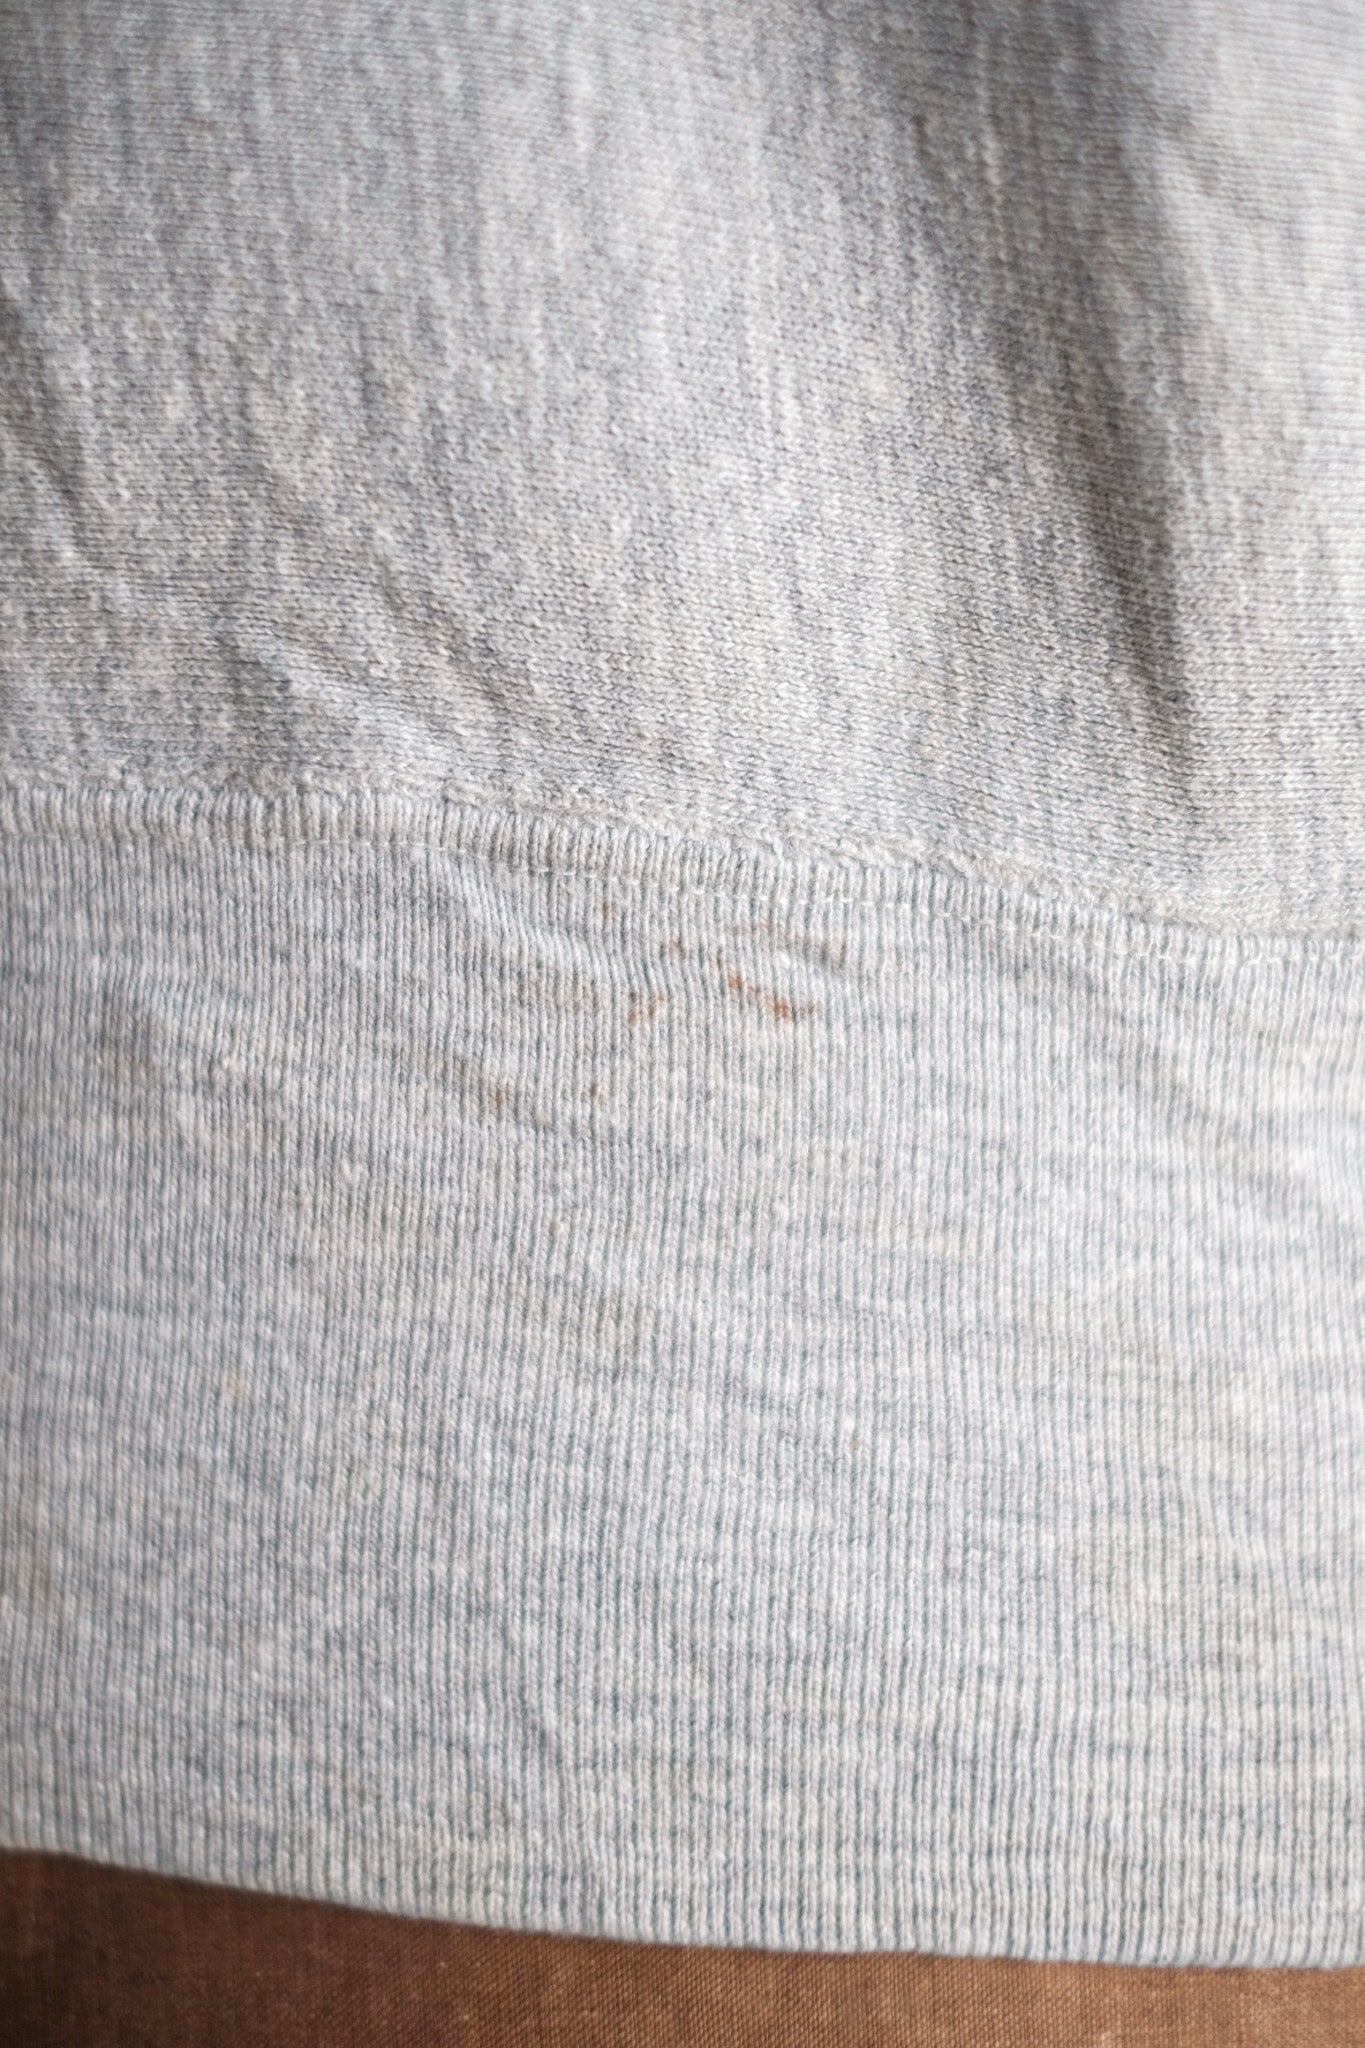 [~ 80's] Champion vintage Sweat-shirt de tissage inversé "USNA"